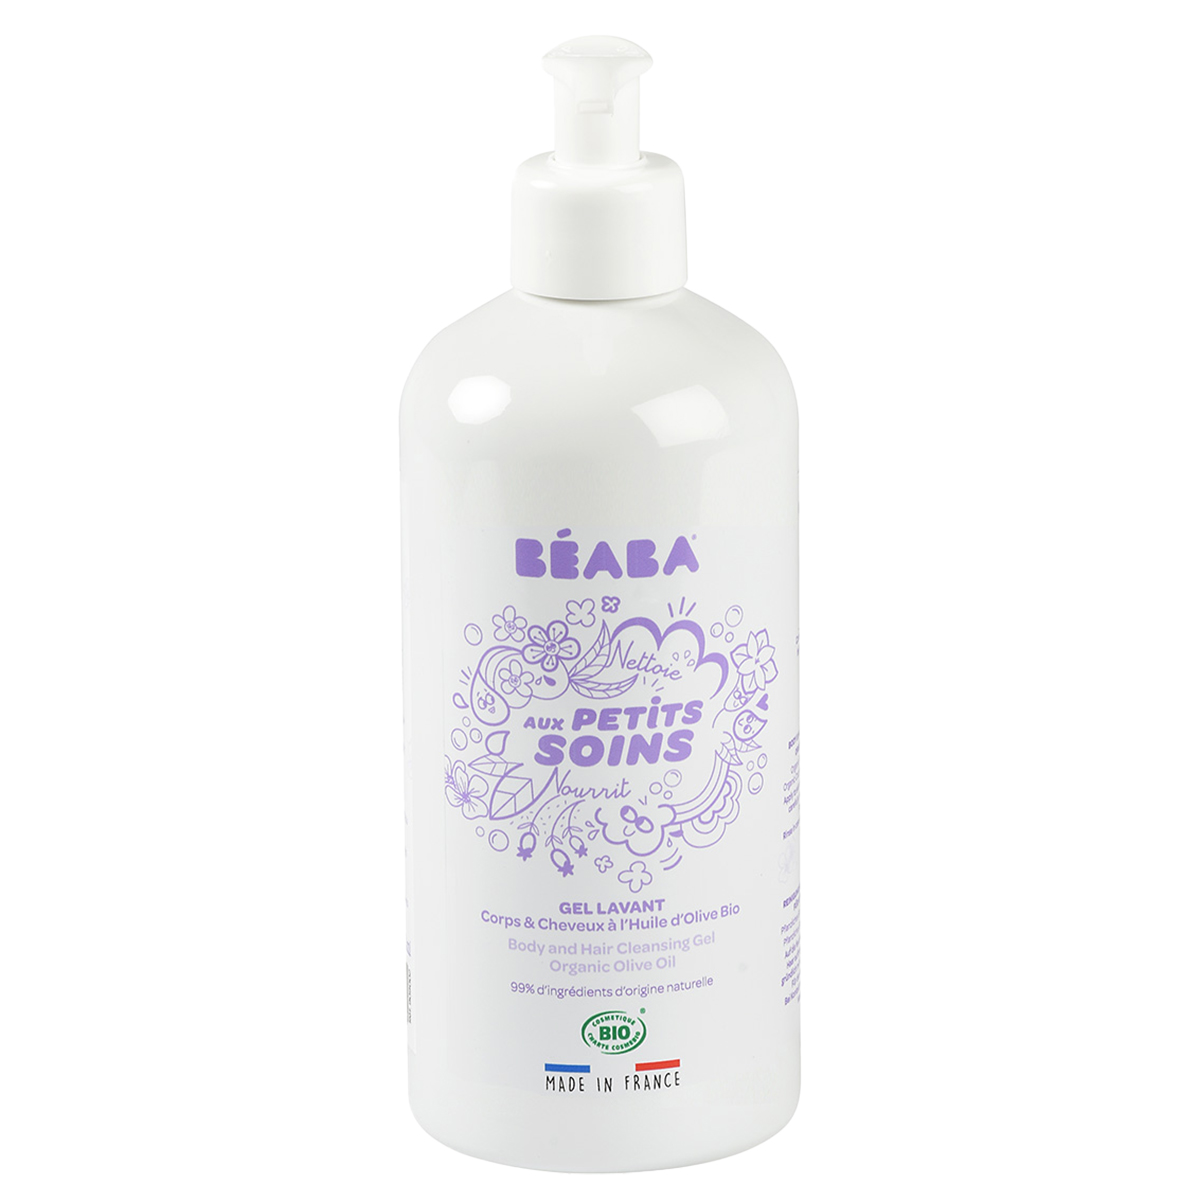 Beaba - Gel lavant corps & cheveux à l’huile d’olive bio BLANC Béaba